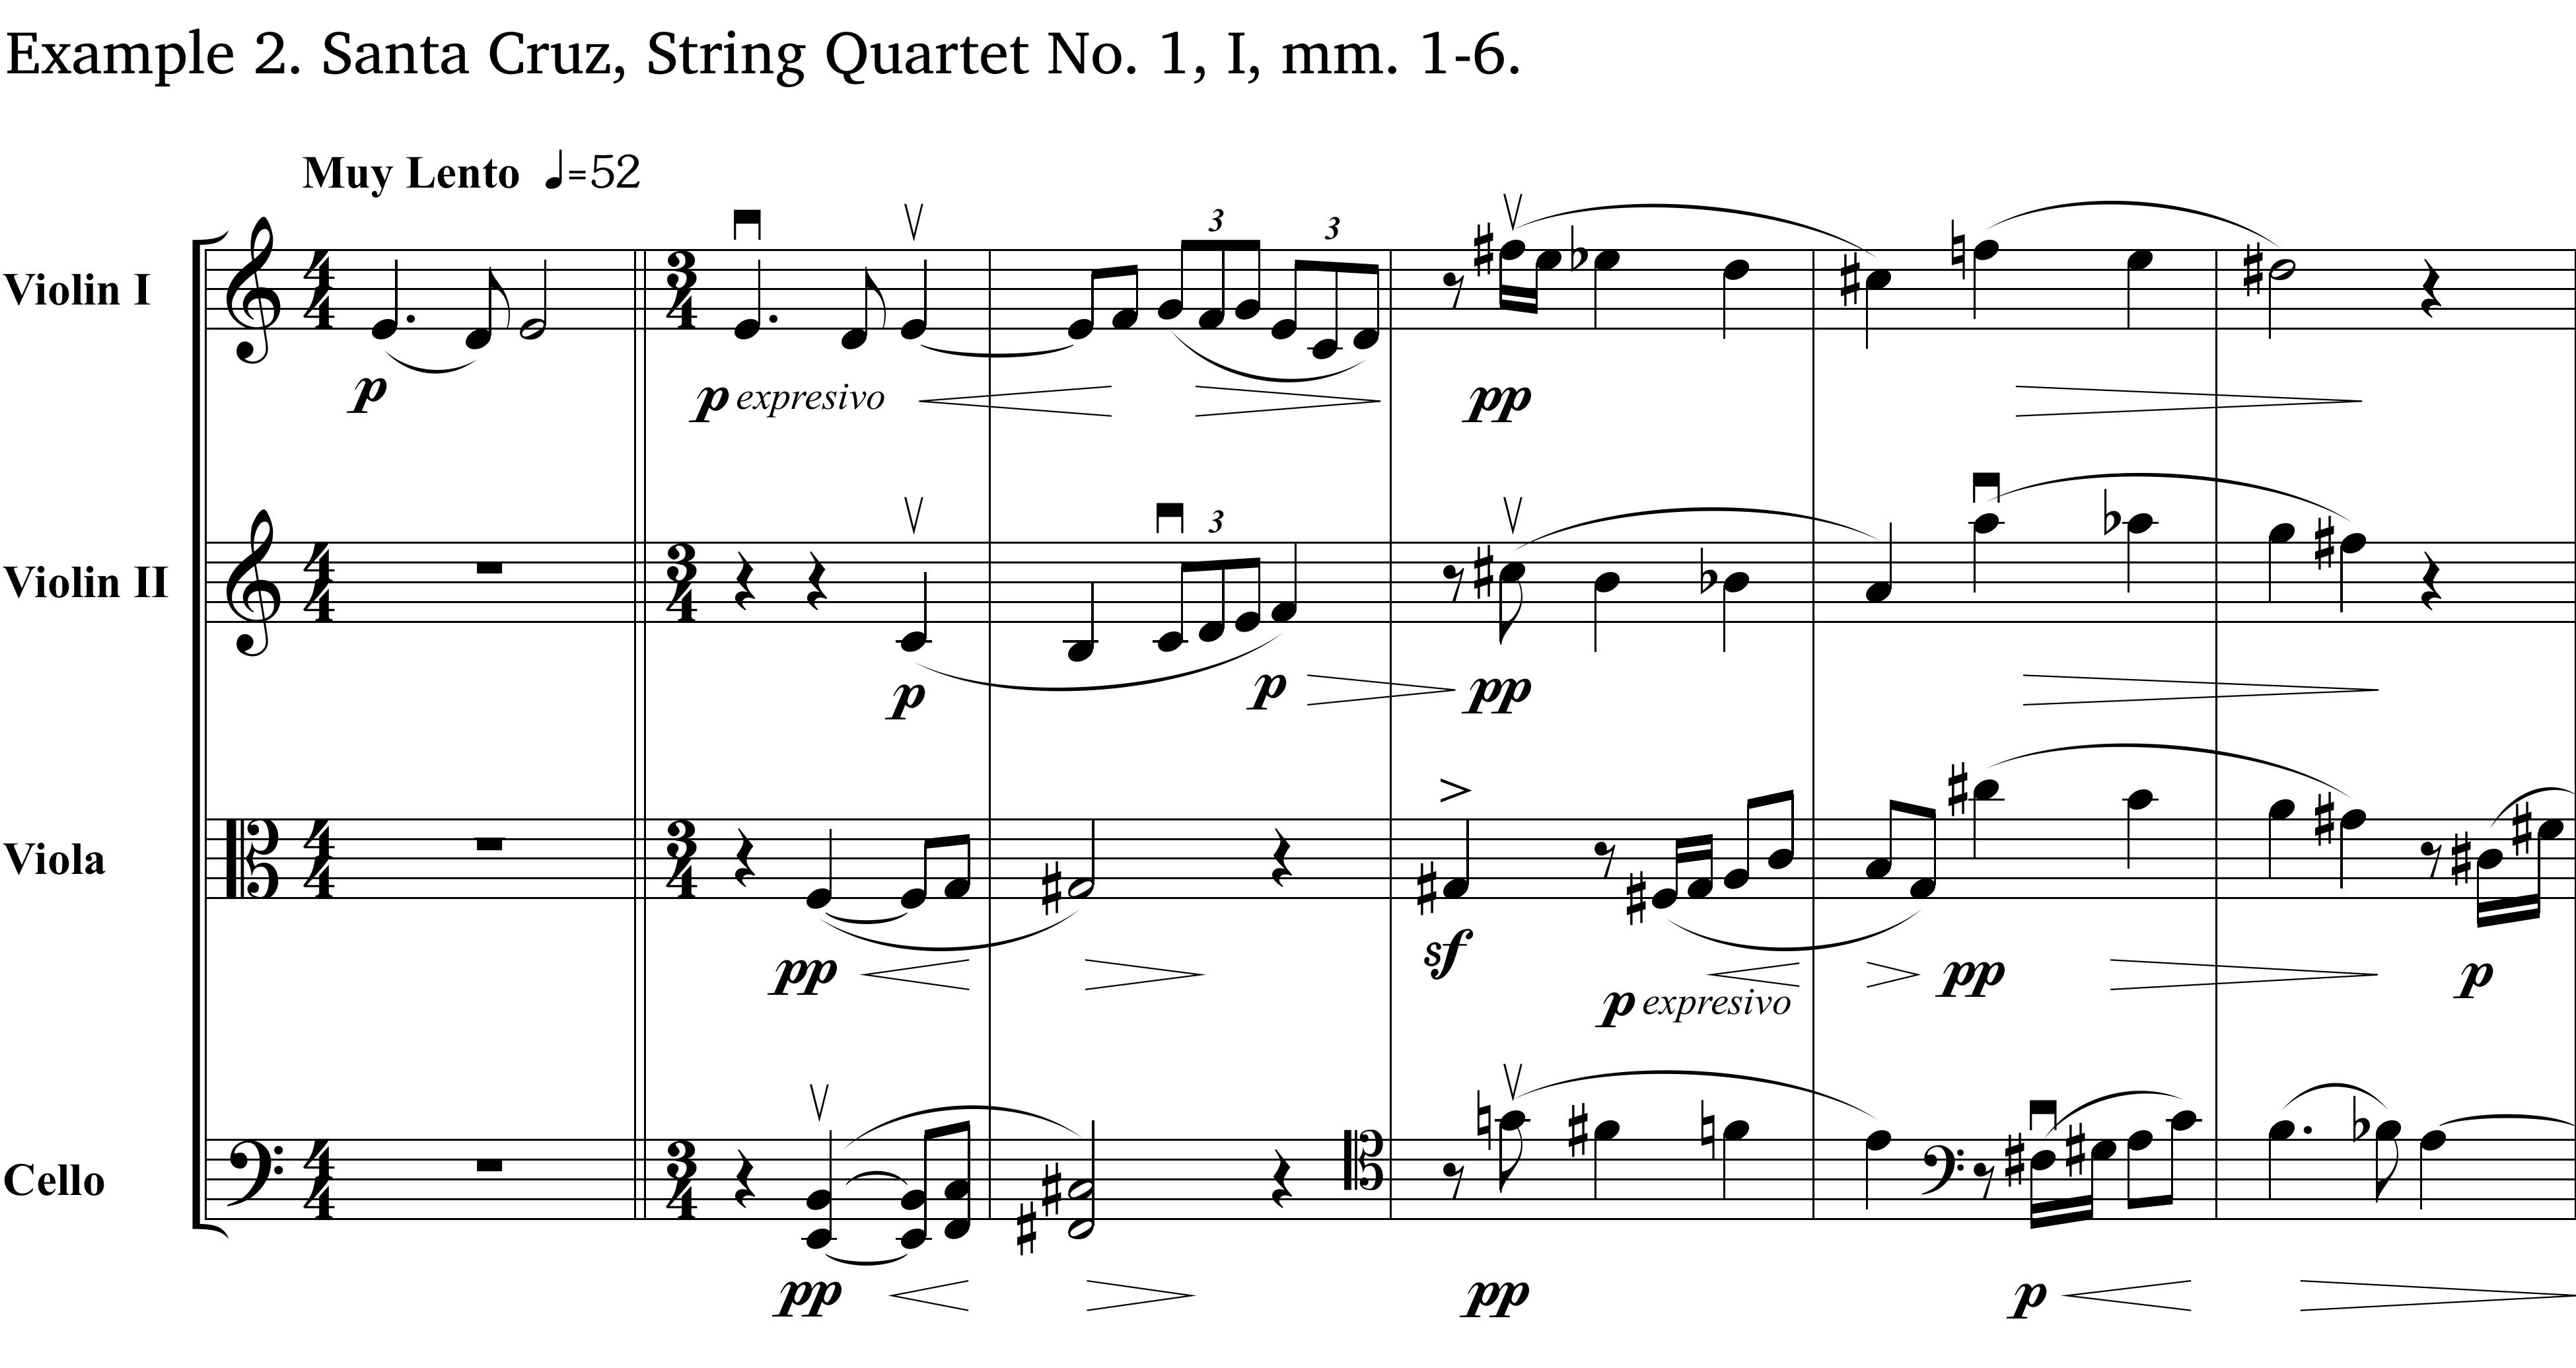 Example 2, Santa Cruz Quartet